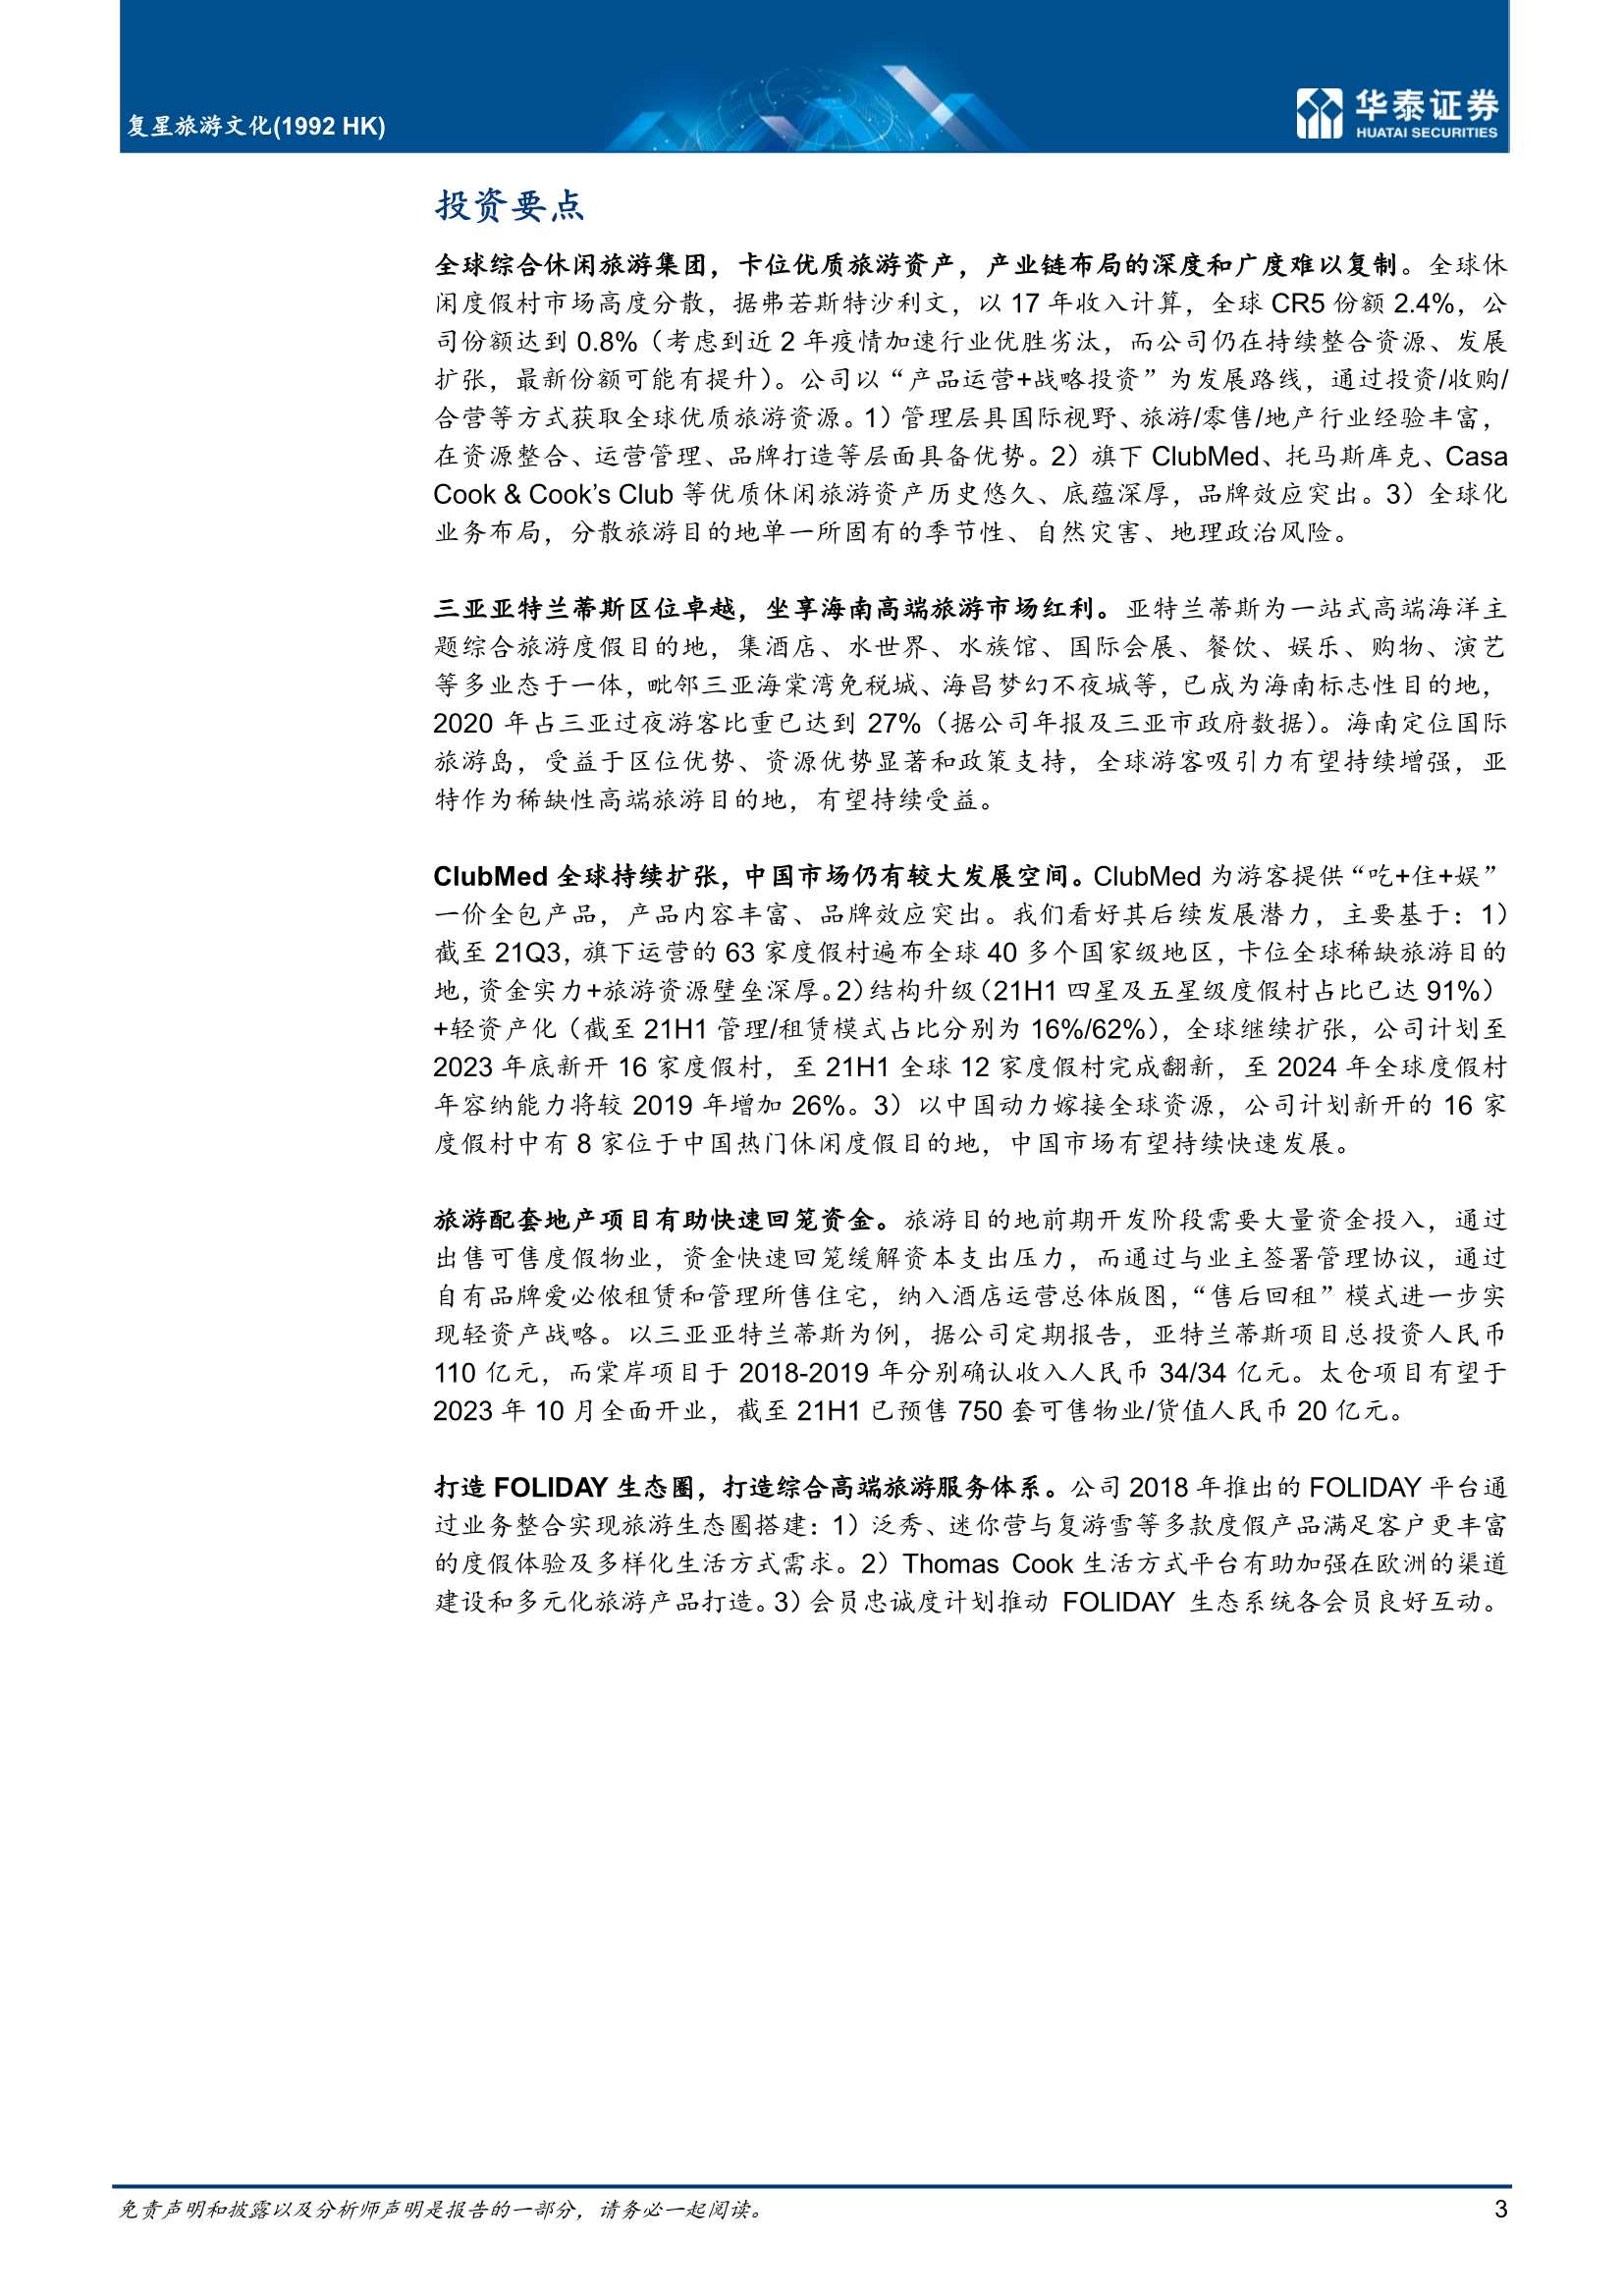 华泰证券-复星旅游文化-1992.HK-休闲度假游龙头，期待业绩复苏-20220222-26页